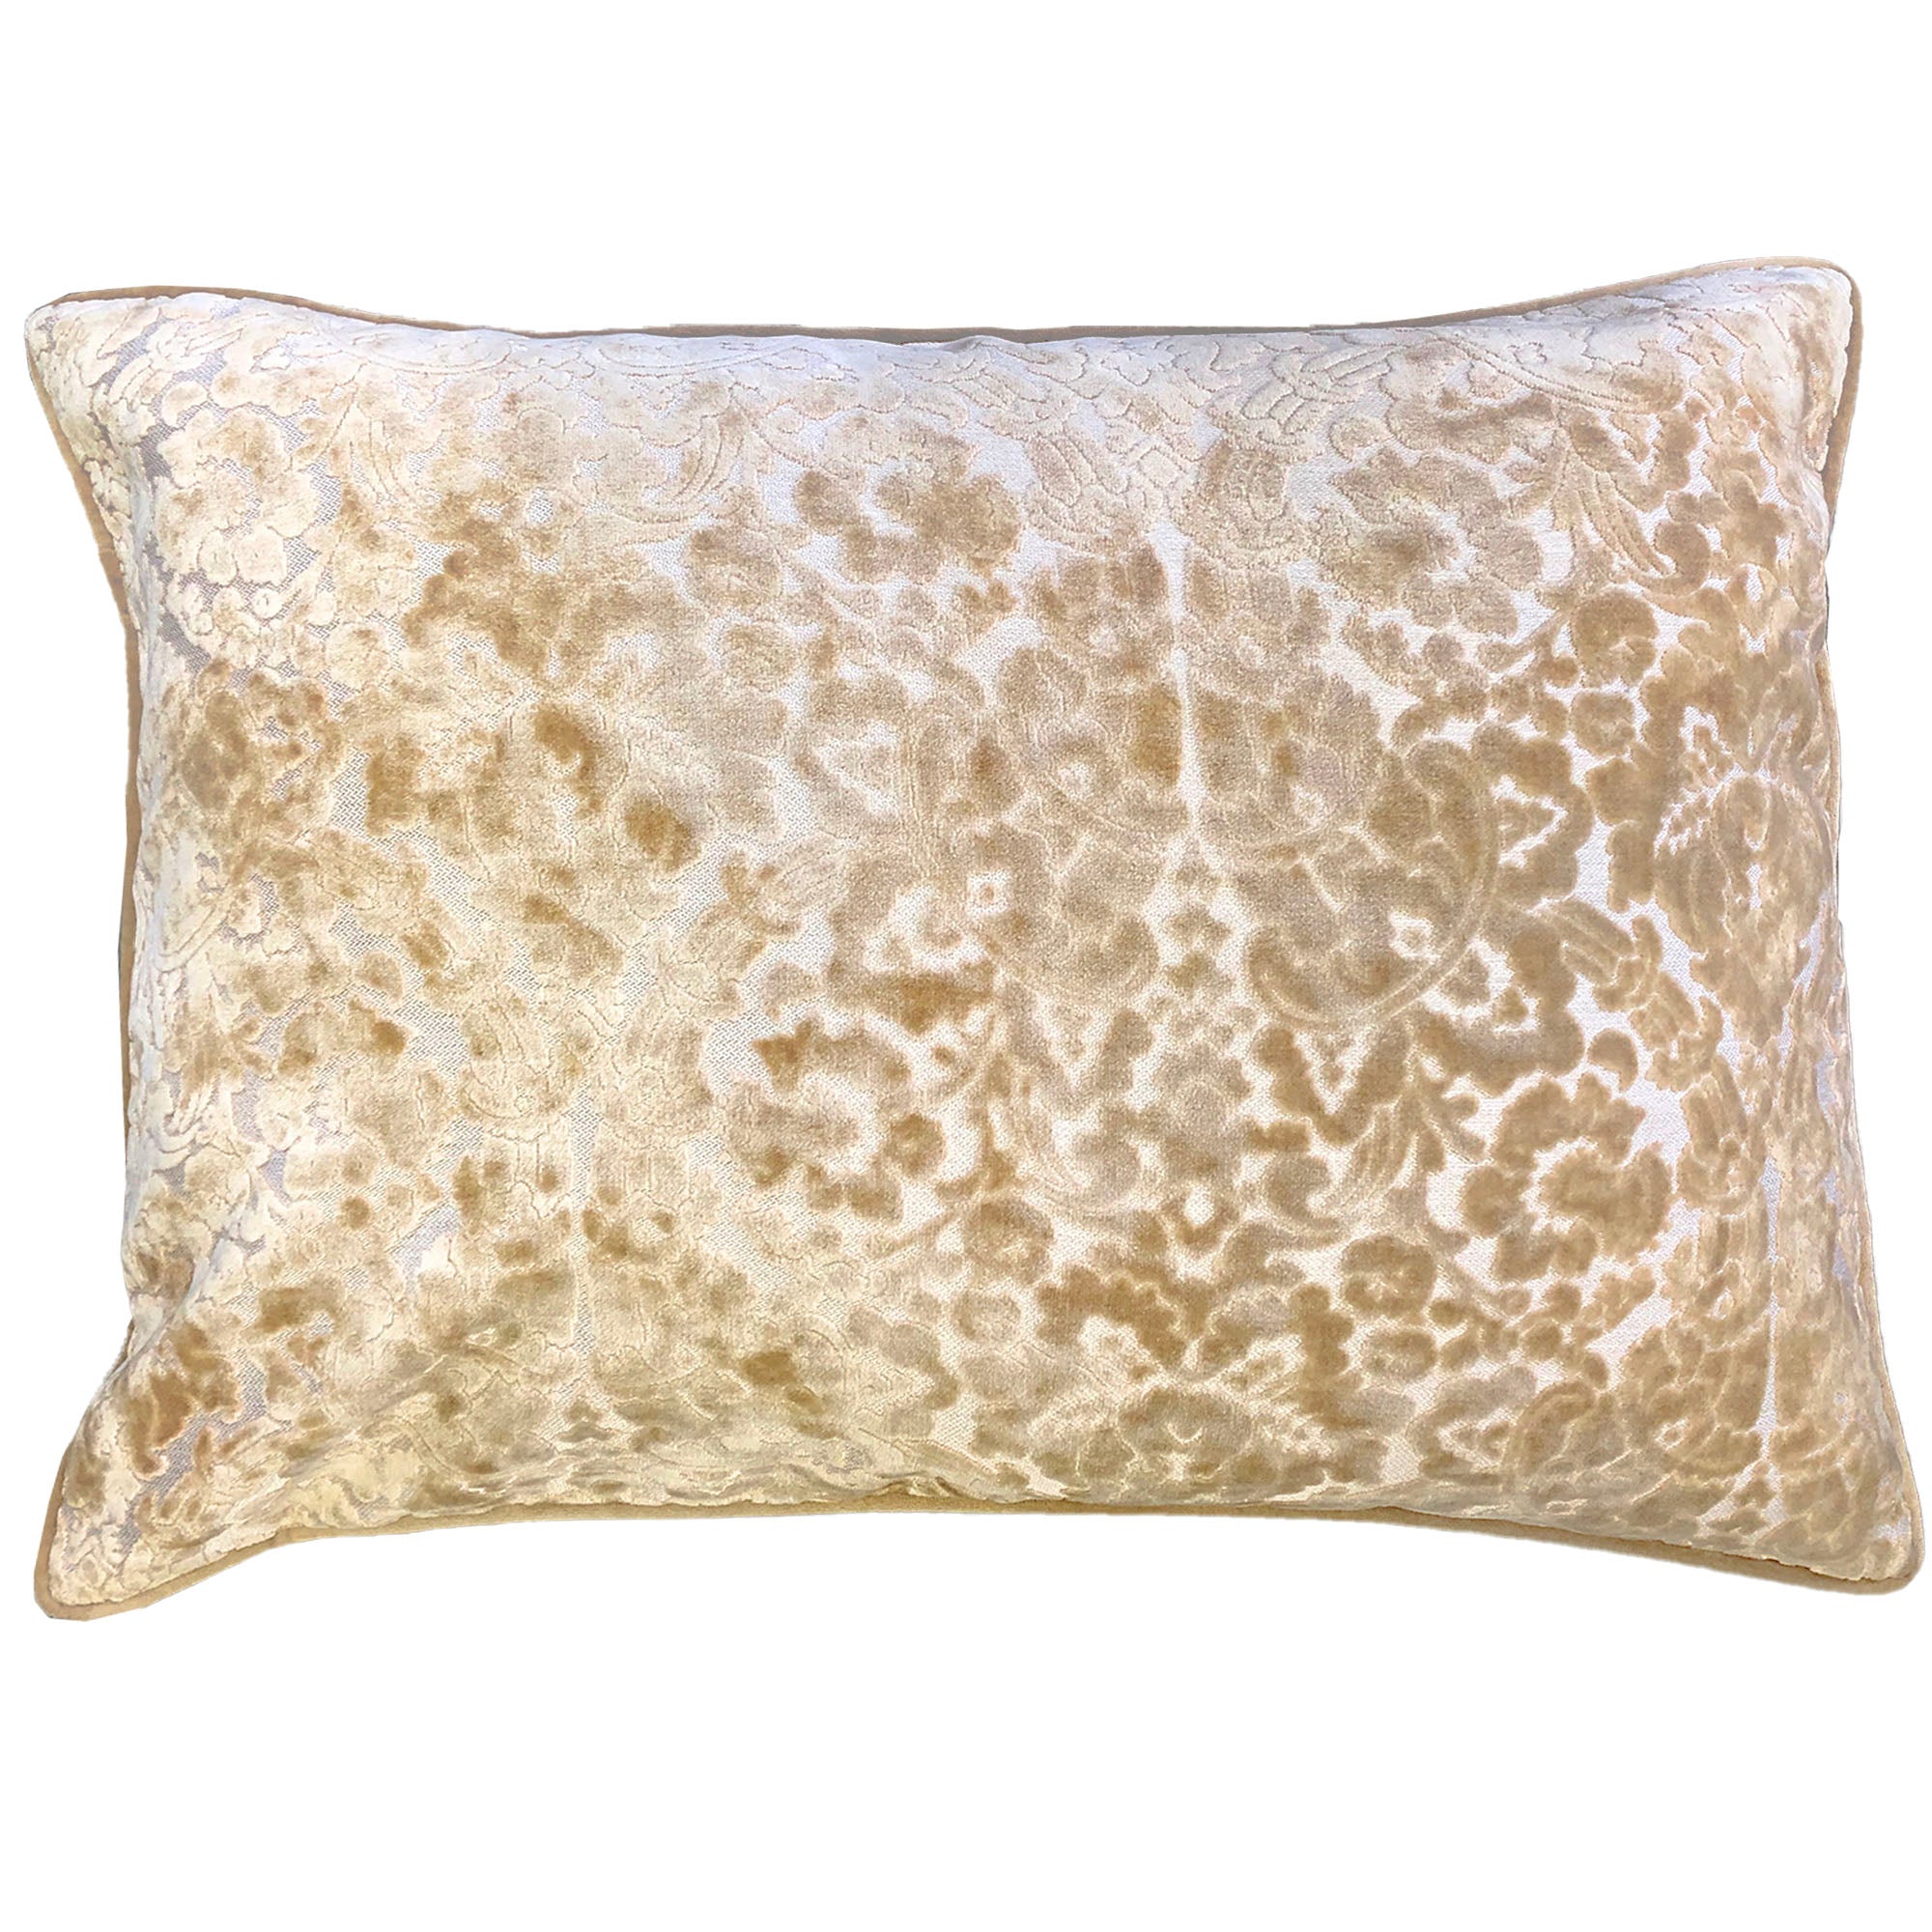 Nixon Pillows | Size 18x24